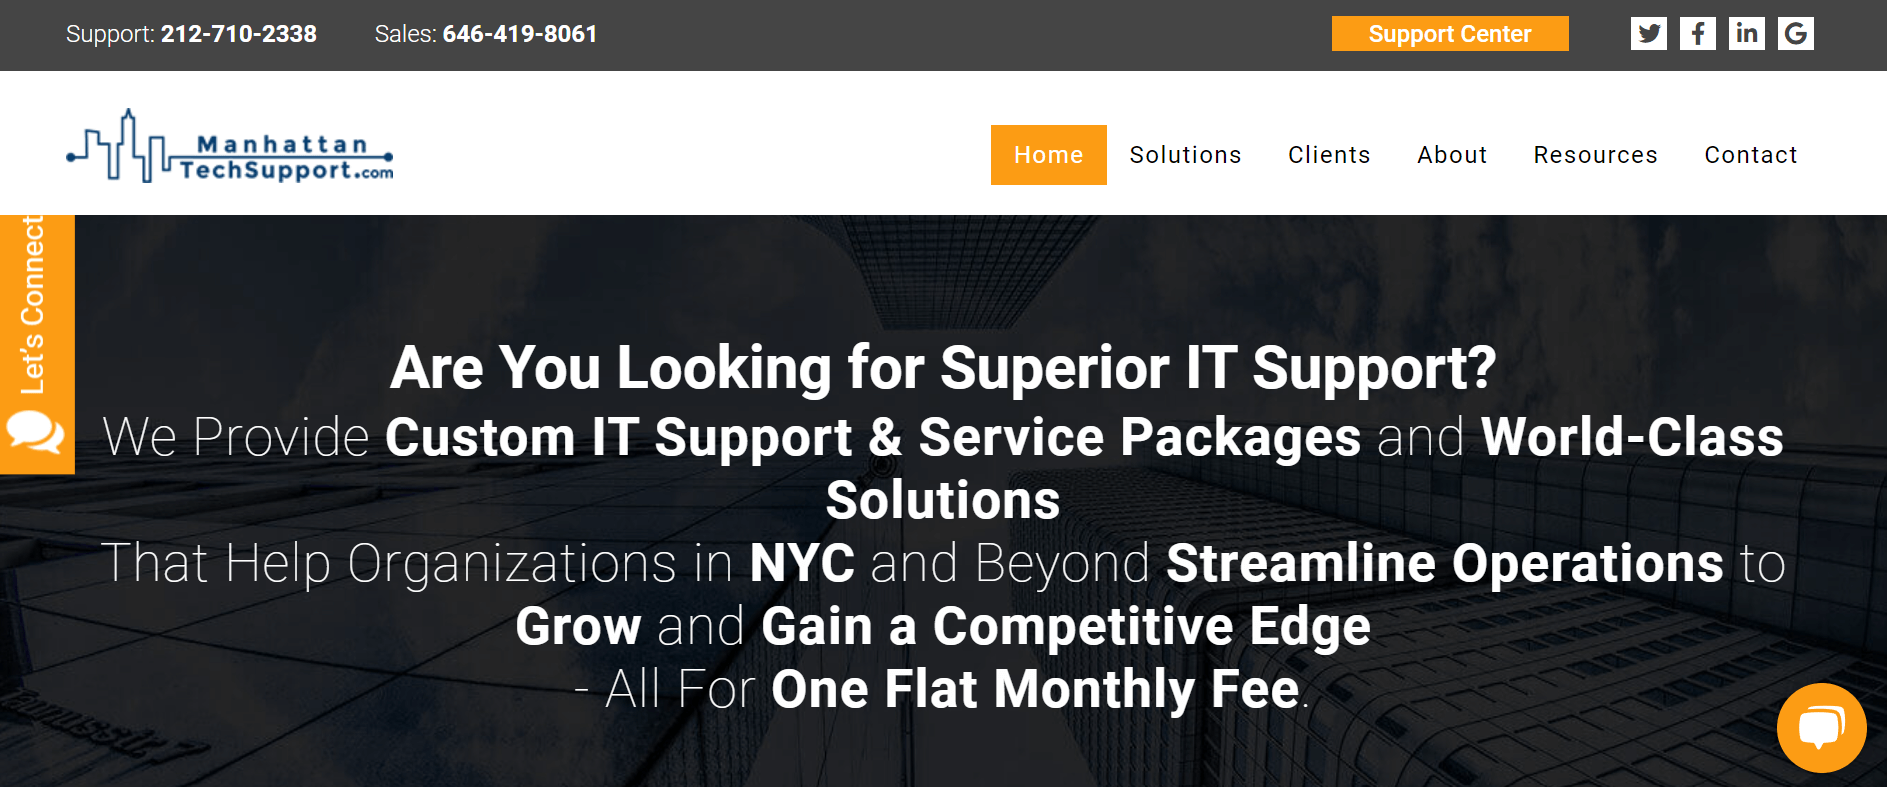 Manhattan Tech Support homepage